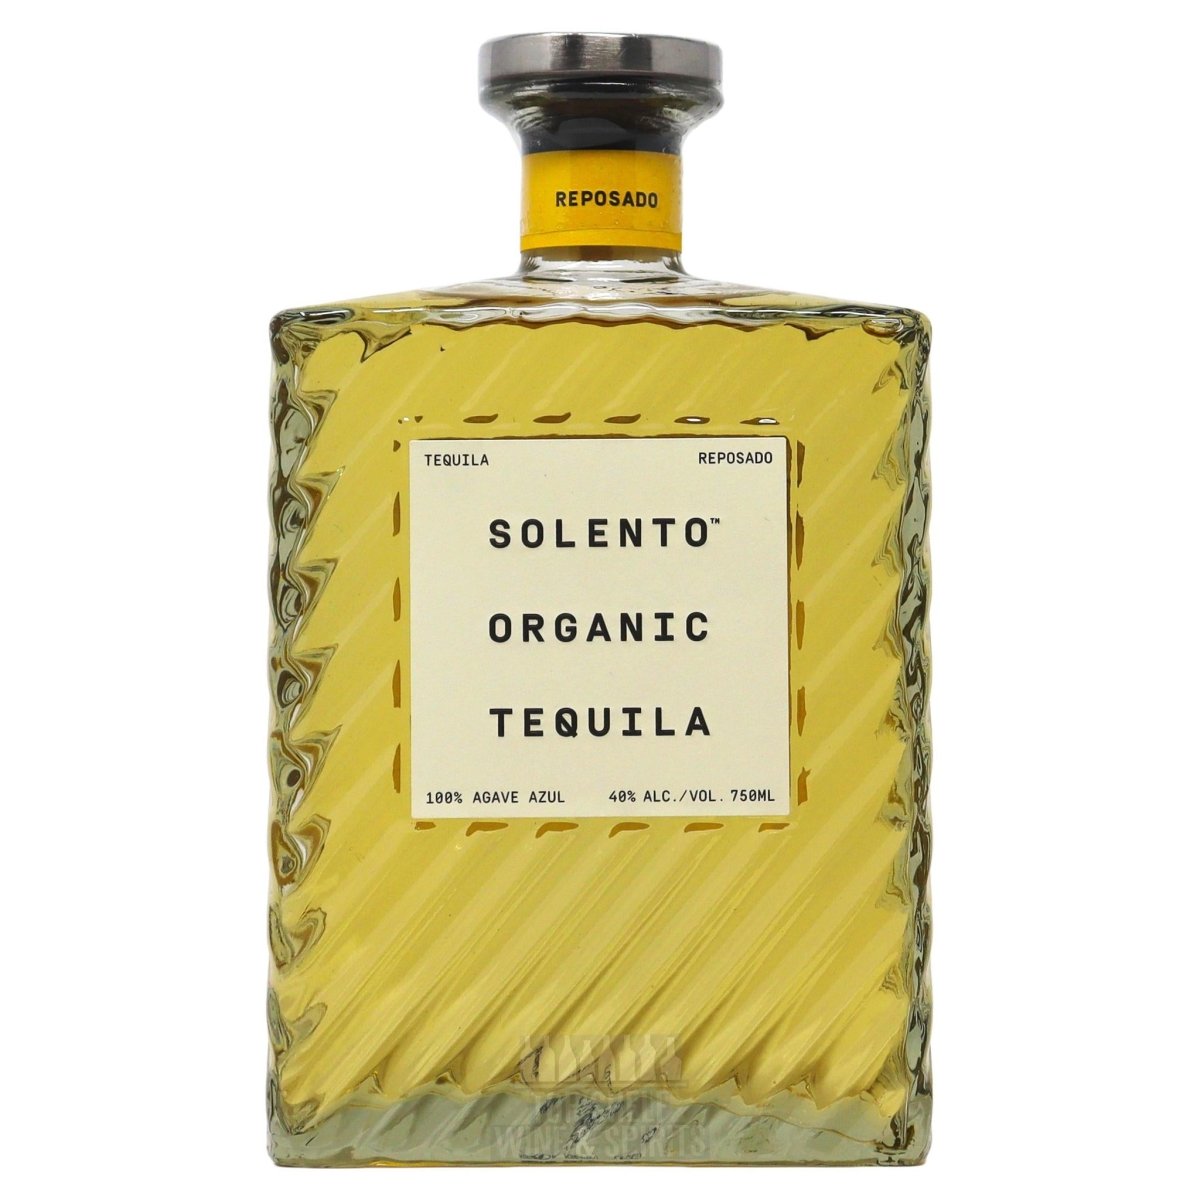 Solento - Organic Reposado Tequila (750ML) - The Epicurean Trader